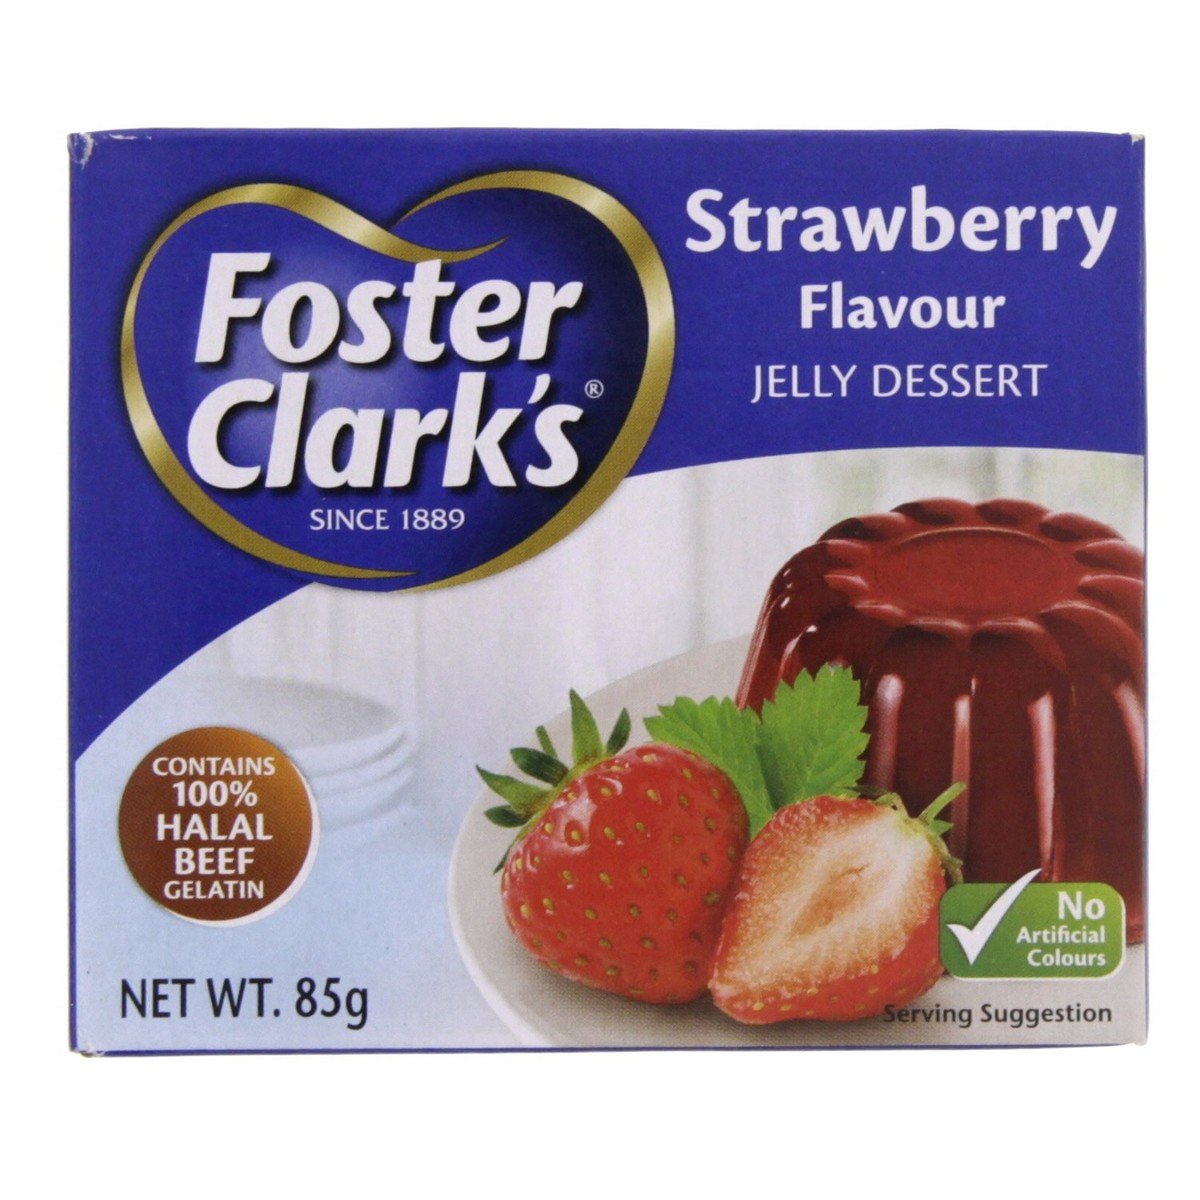 Foster Clark's Jelly Dessert Strawberry Flavour 12 x 85 g